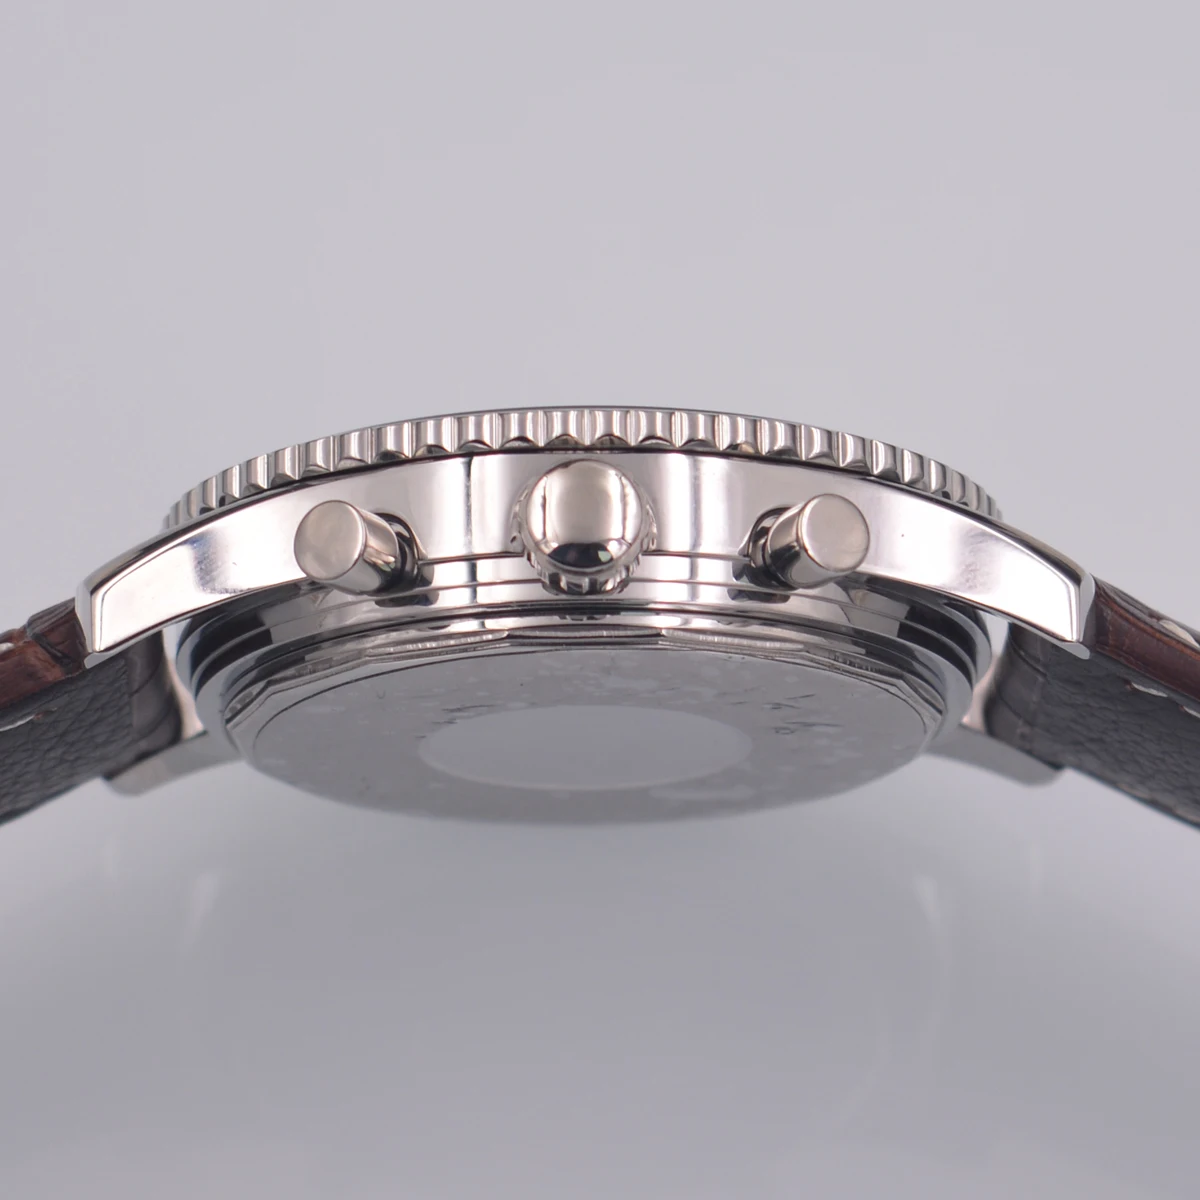 46 мм кожаный ремешок crrju мужские часы cadisen relojes кварцевые наручные часы мужские часы 316 S водонепроницаемые Авто Дата